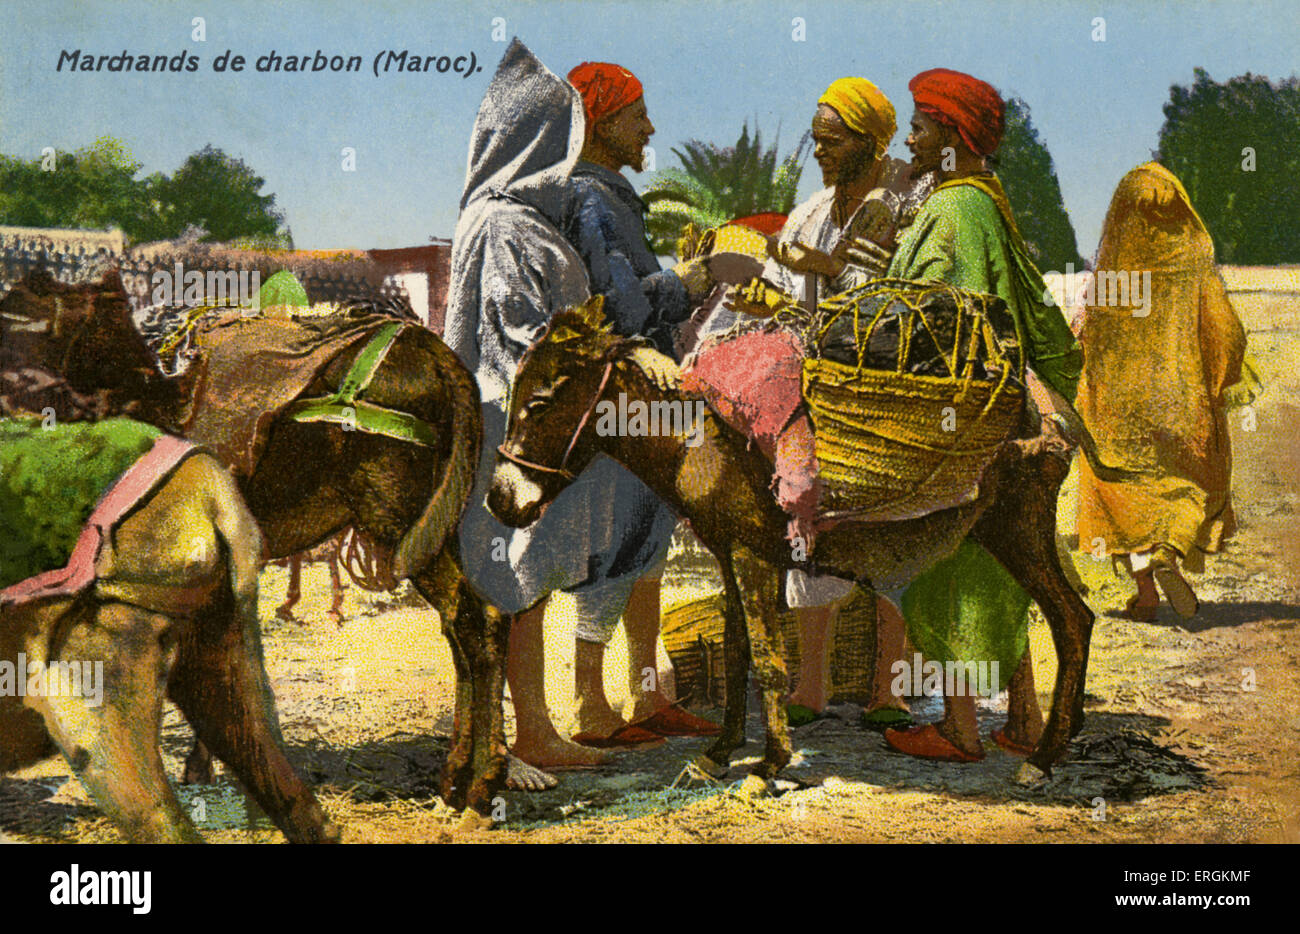 Marocchini venditori di carbone, c.1910. Il carbone viene portato sulle spalle di donkies. Foto Stock